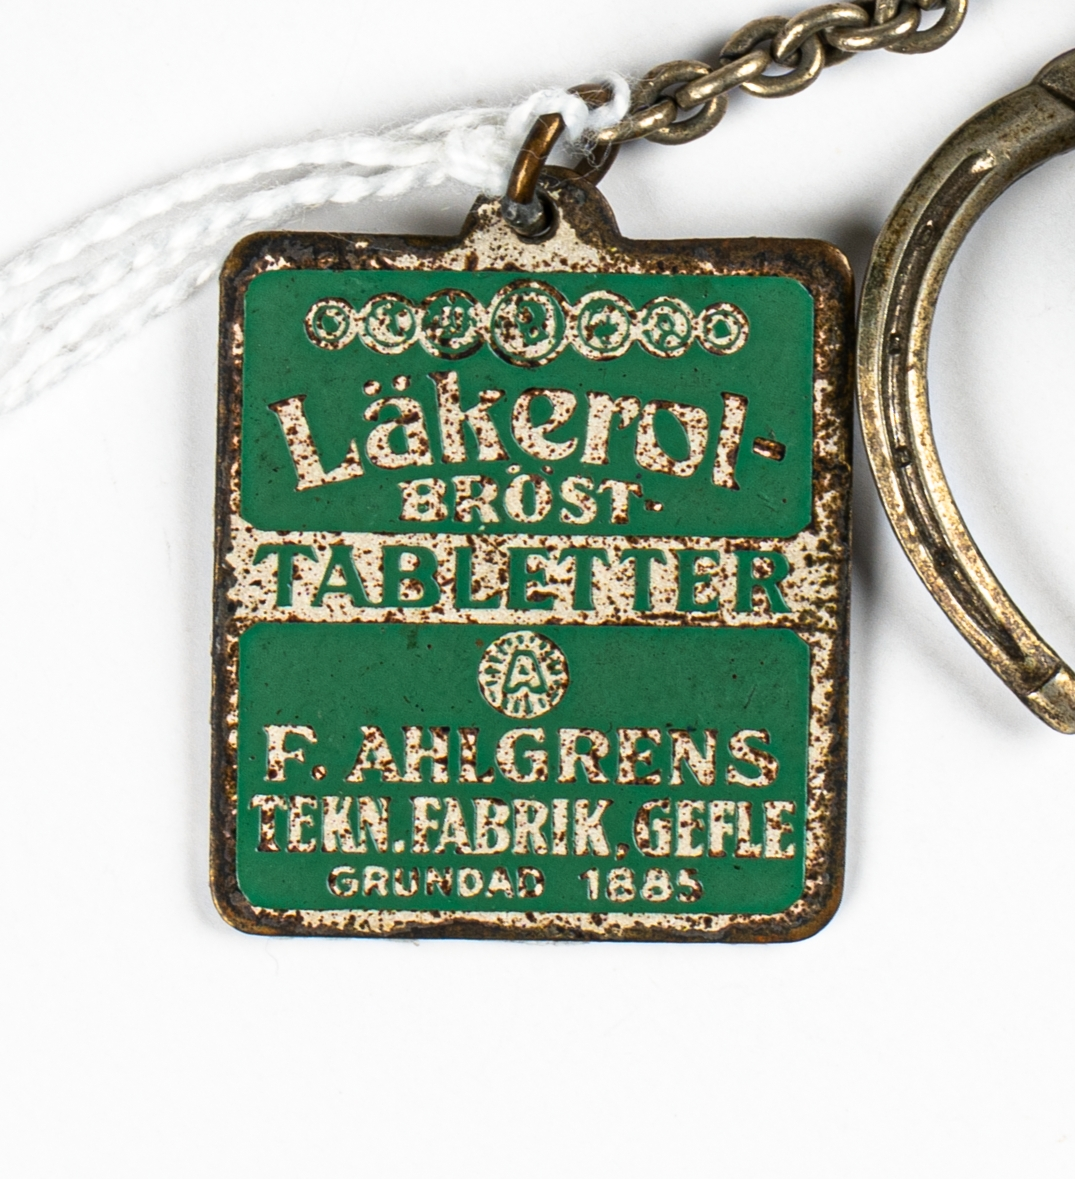 En nyckelring med två nycklar samt en hästsko med en nyckelbricka i metall, i form av en grön och vit Läkerolask. Nyckelringen hänger i en metallögla.